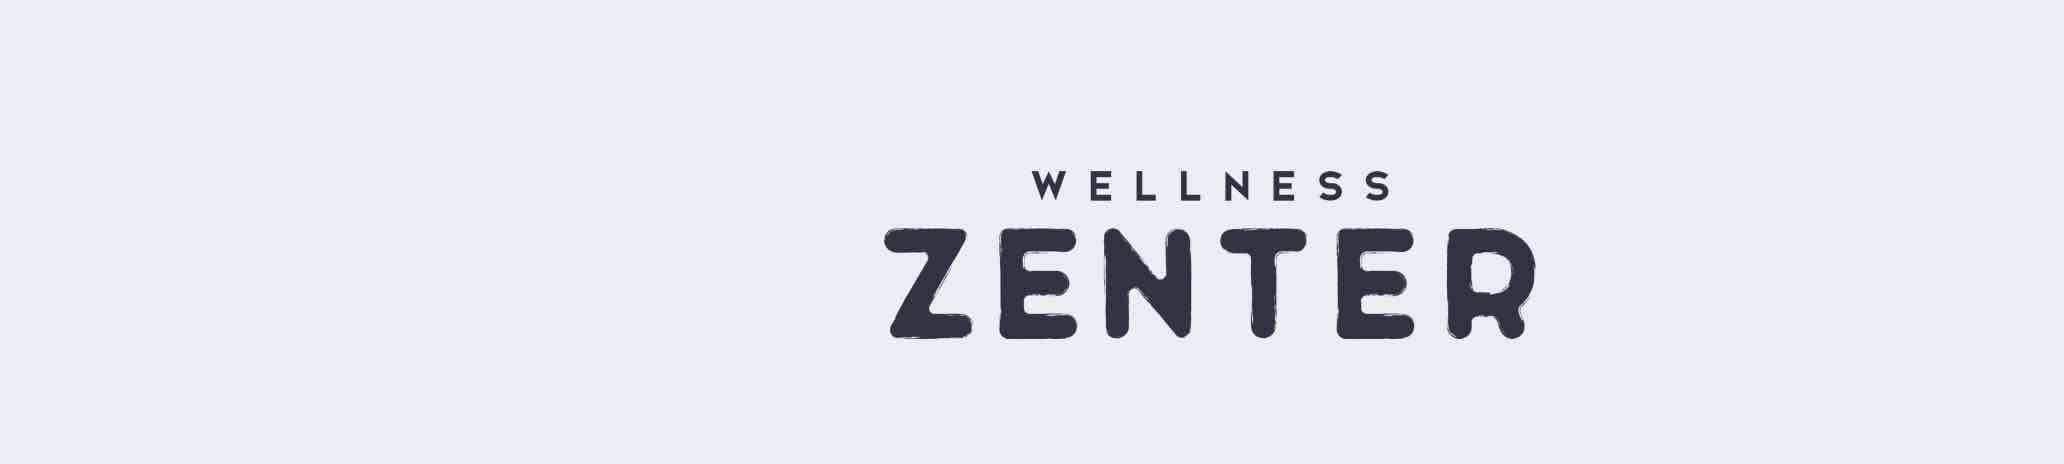 Faixa Wellness Zenter.